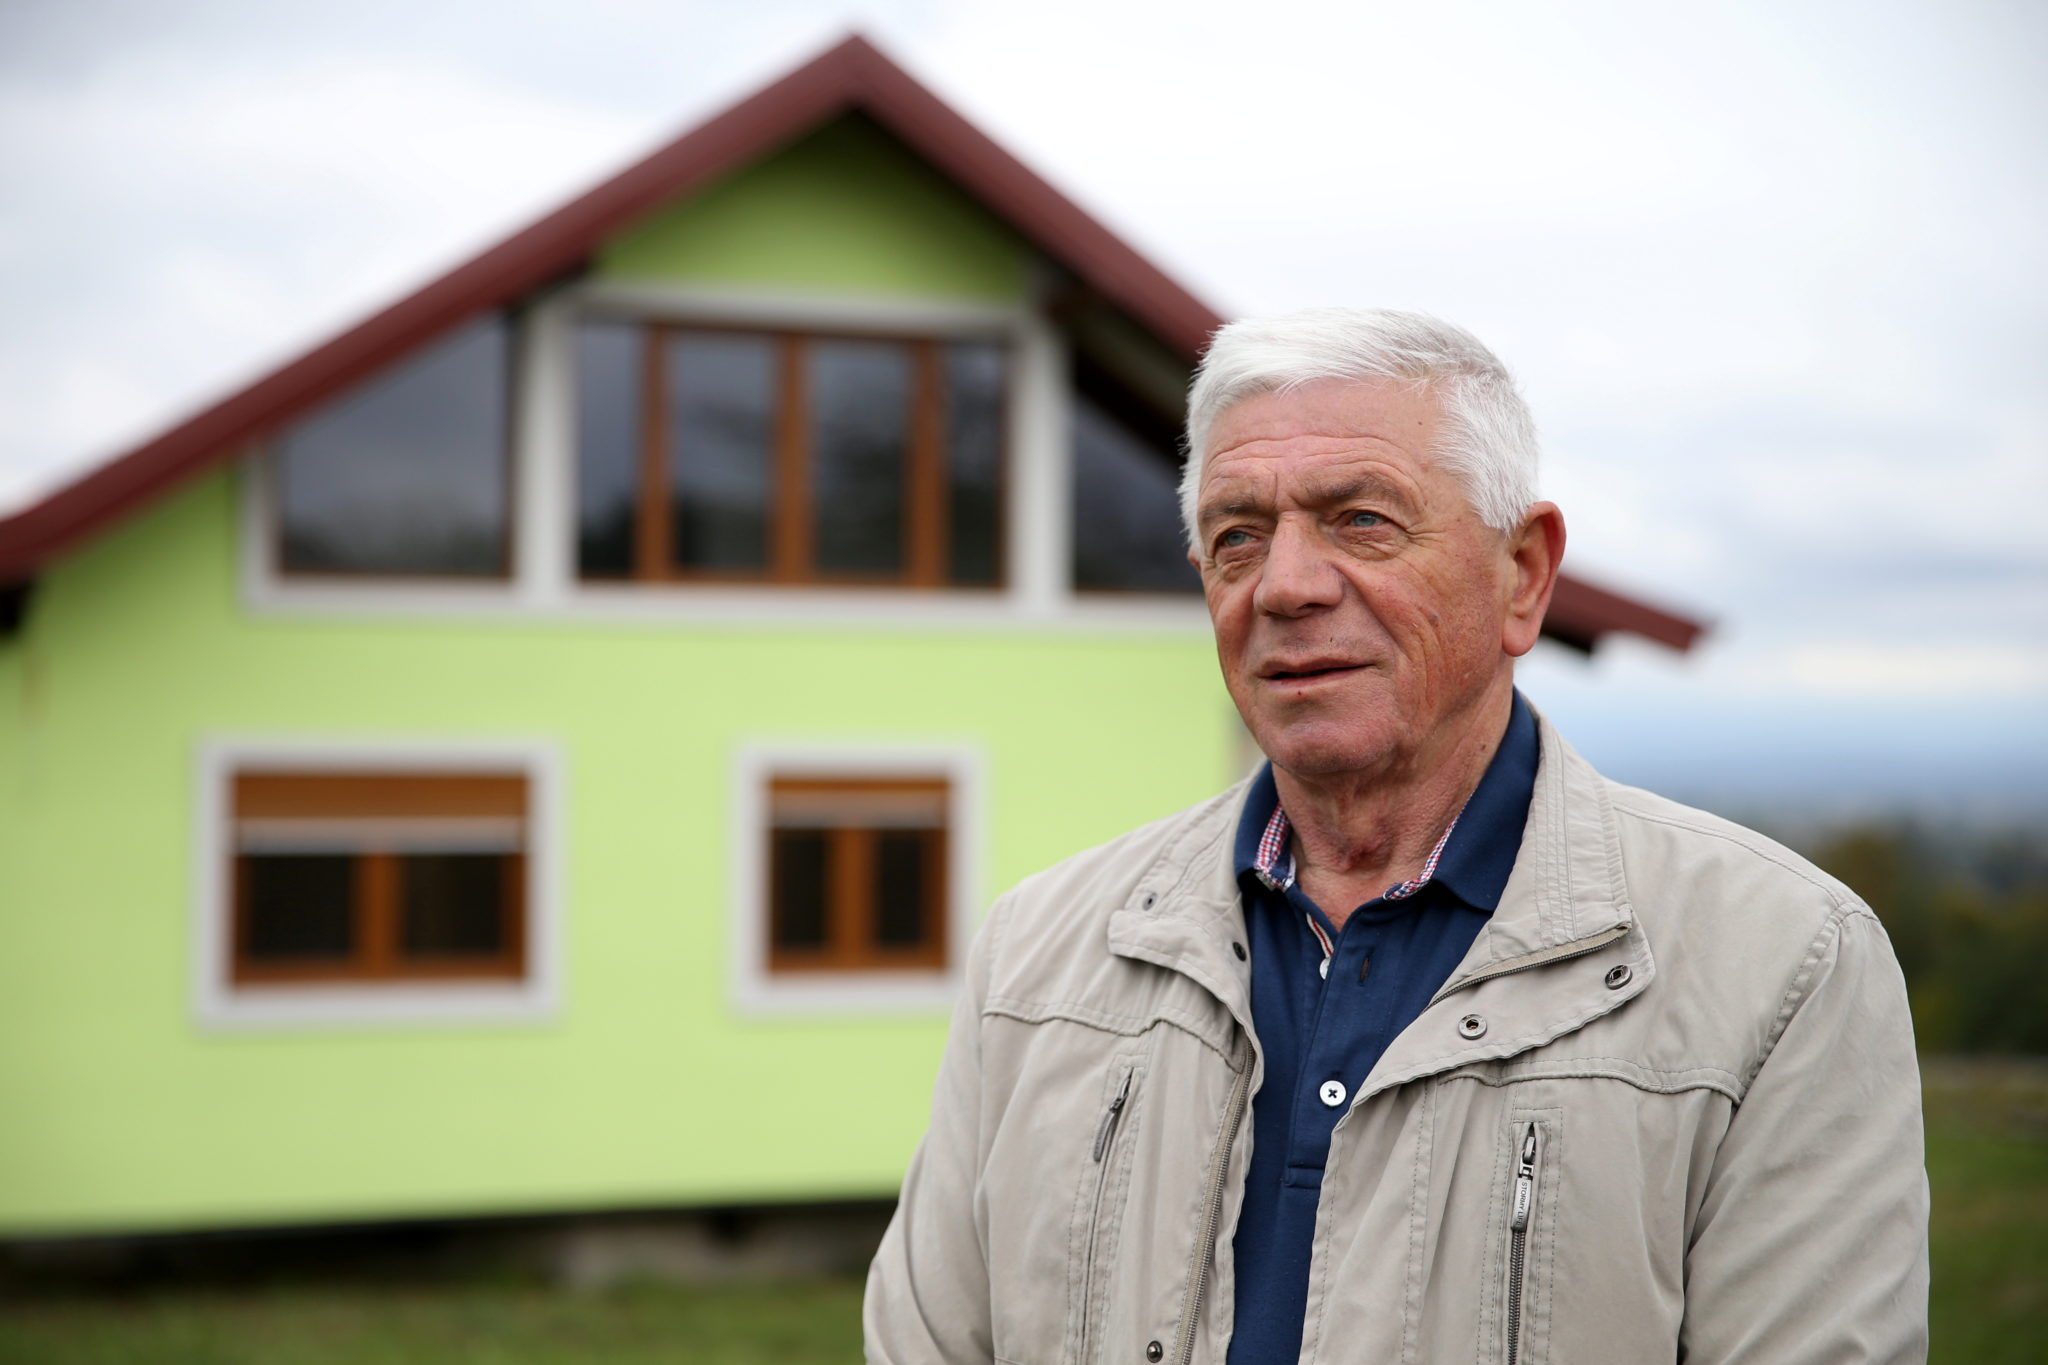 Воїн Кушич позується для фотозйомки перед своїм будинком, що обертається, у Србаці, Боснія і Герцеговина, 9 жовтня 2021 року. REUTERS/Дадо Рувіч